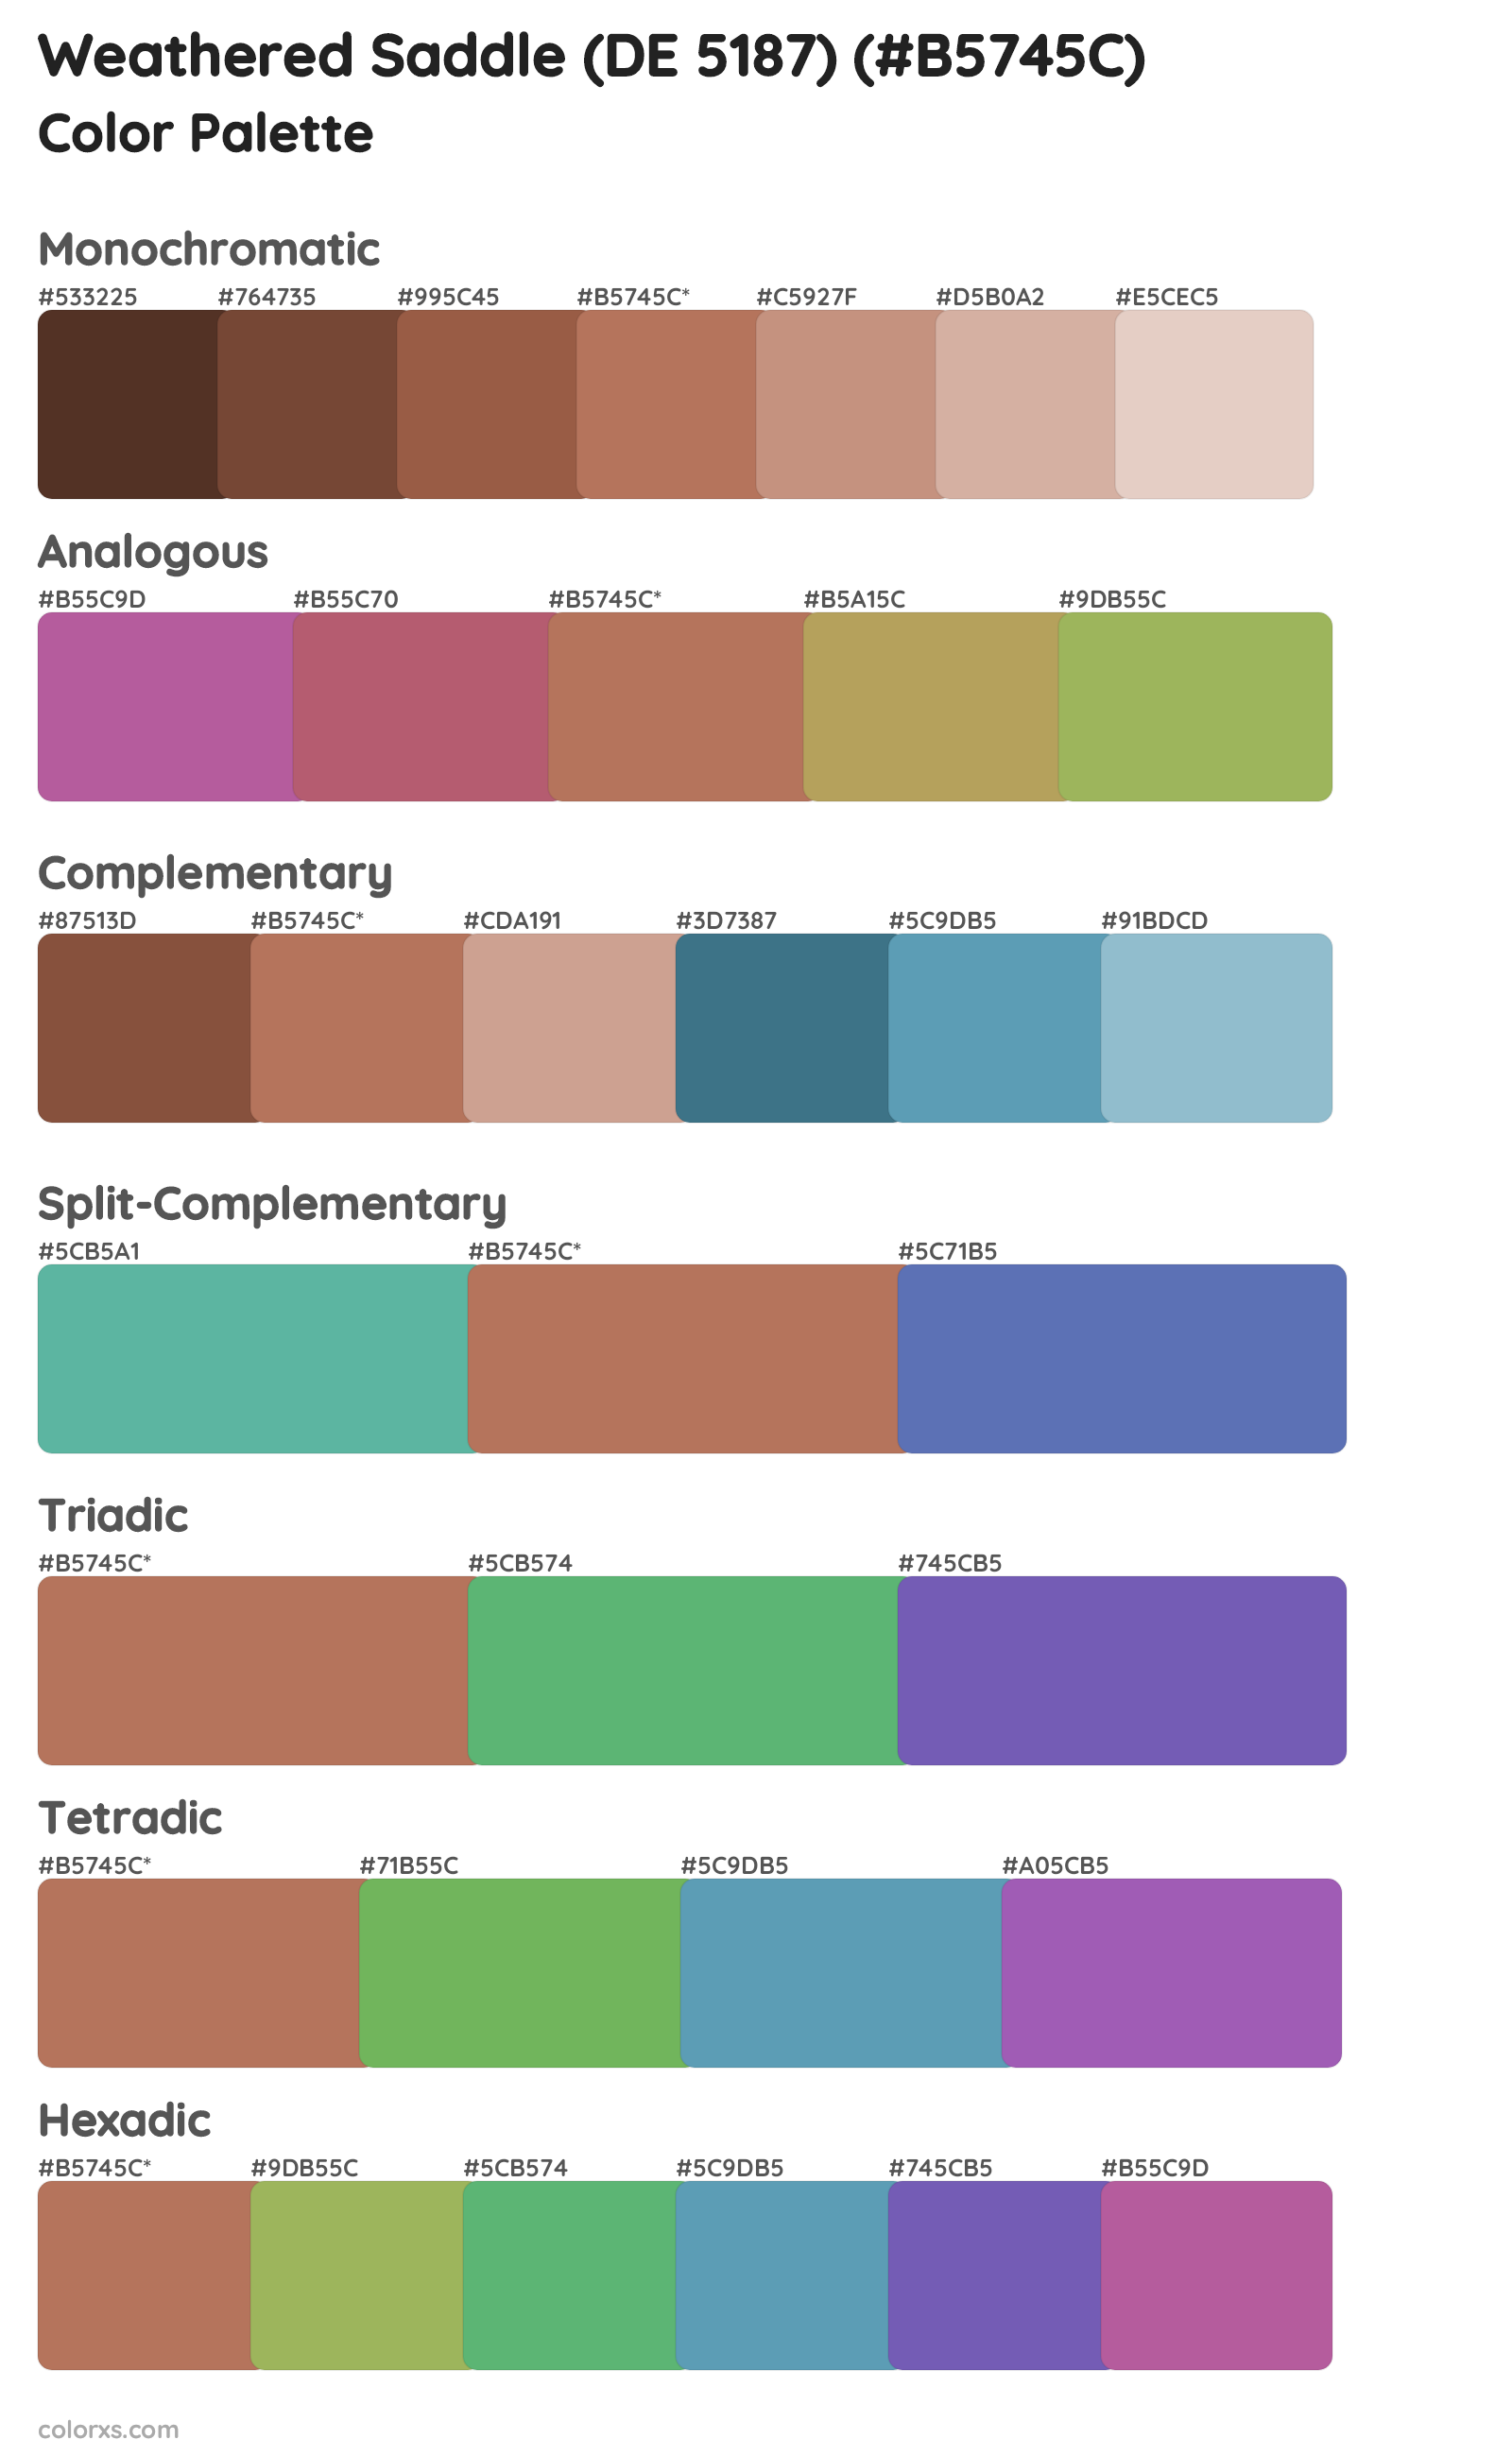 Weathered Saddle (DE 5187) Color Scheme Palettes